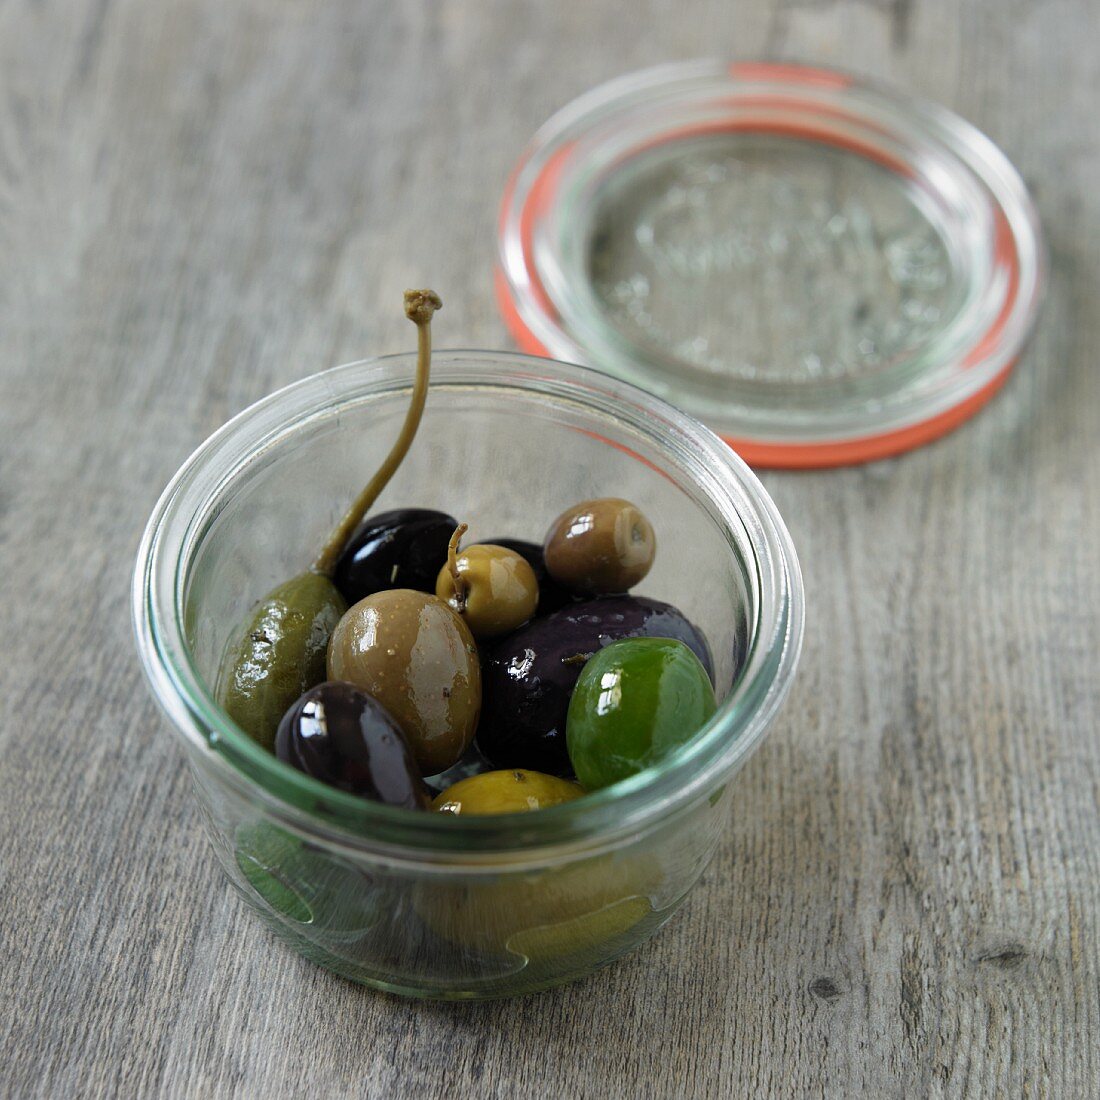 Eingelegte Oliven und Riesenkapern im Glas